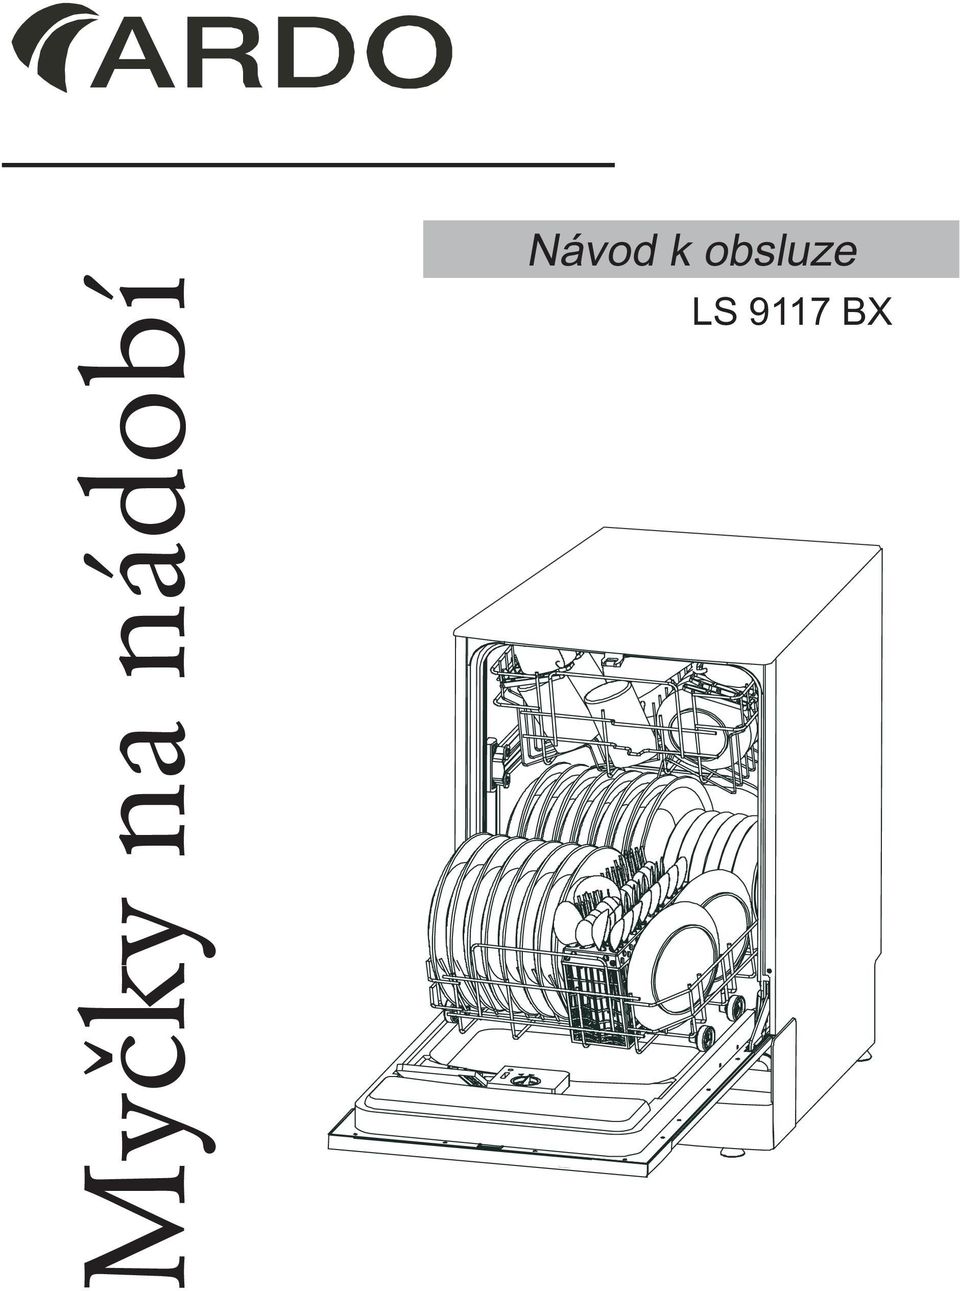 Myčky na nádobí. Návod k obsluze LS 9117 BX - PDF Free Download